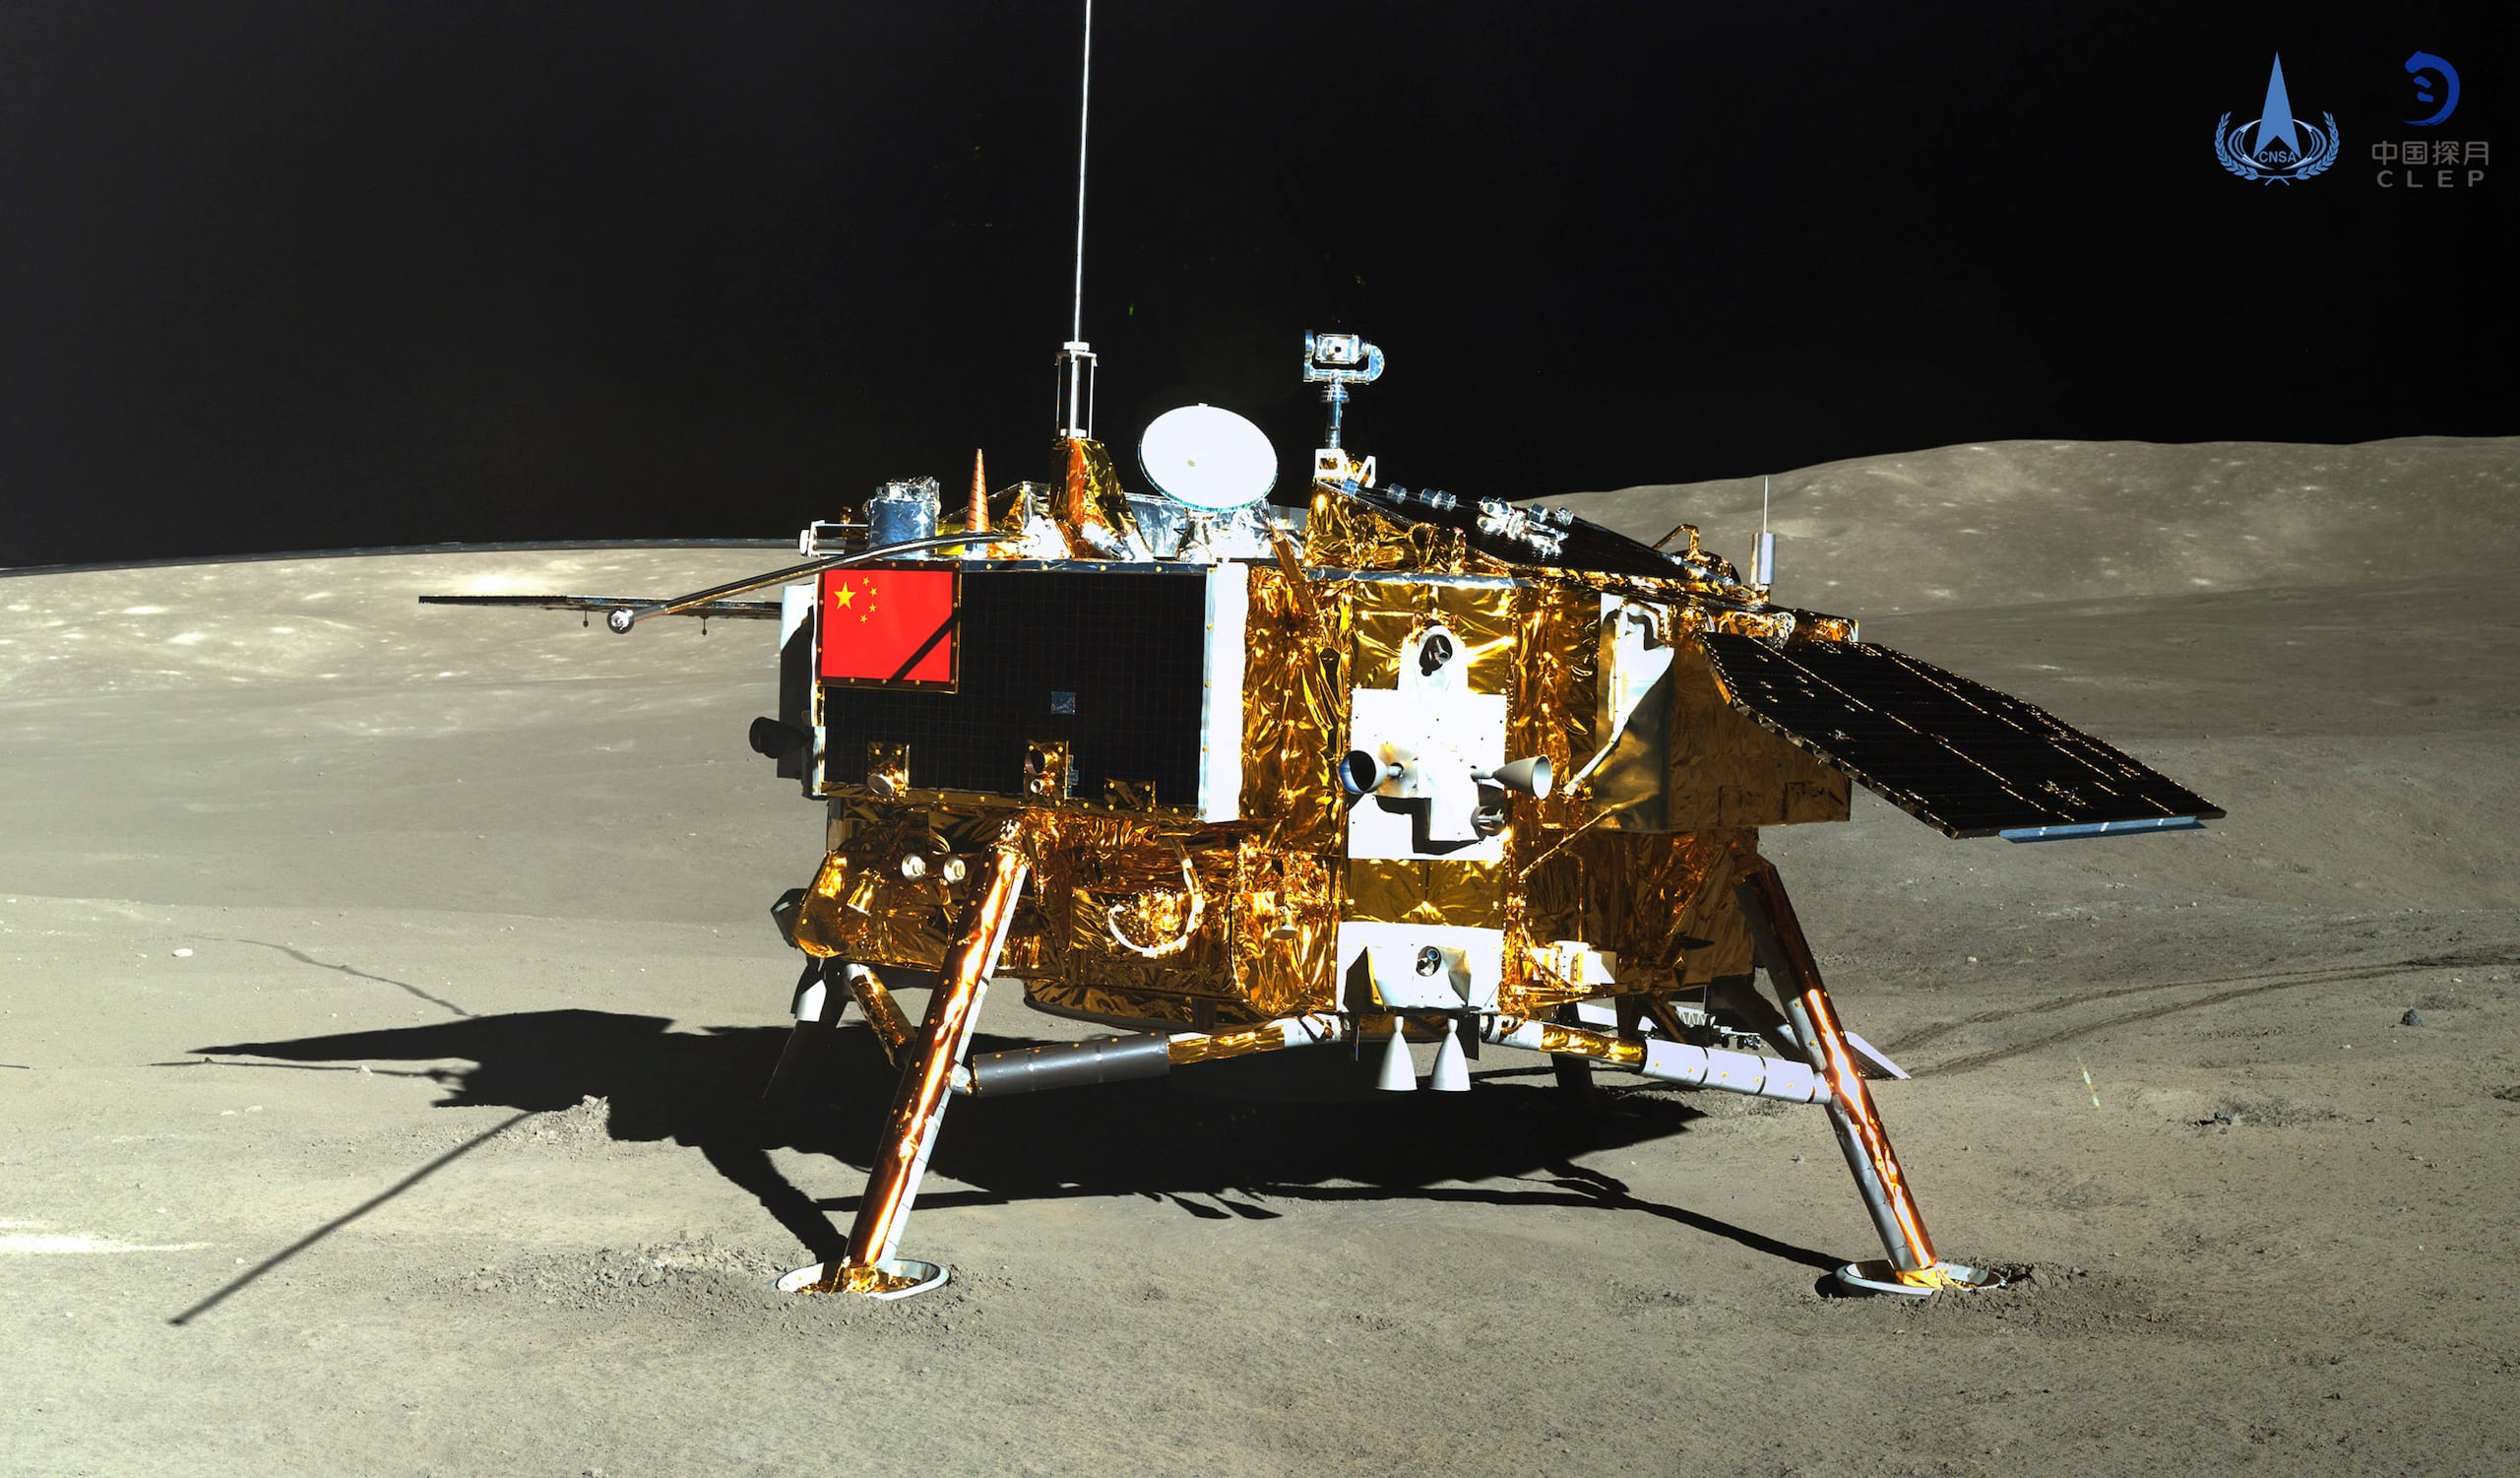 El programa lunar forma parte de una creciente rivalidad con Estados Unidos —que sigue siendo el líder en exploración espacial— y otros países, como Japón e India.